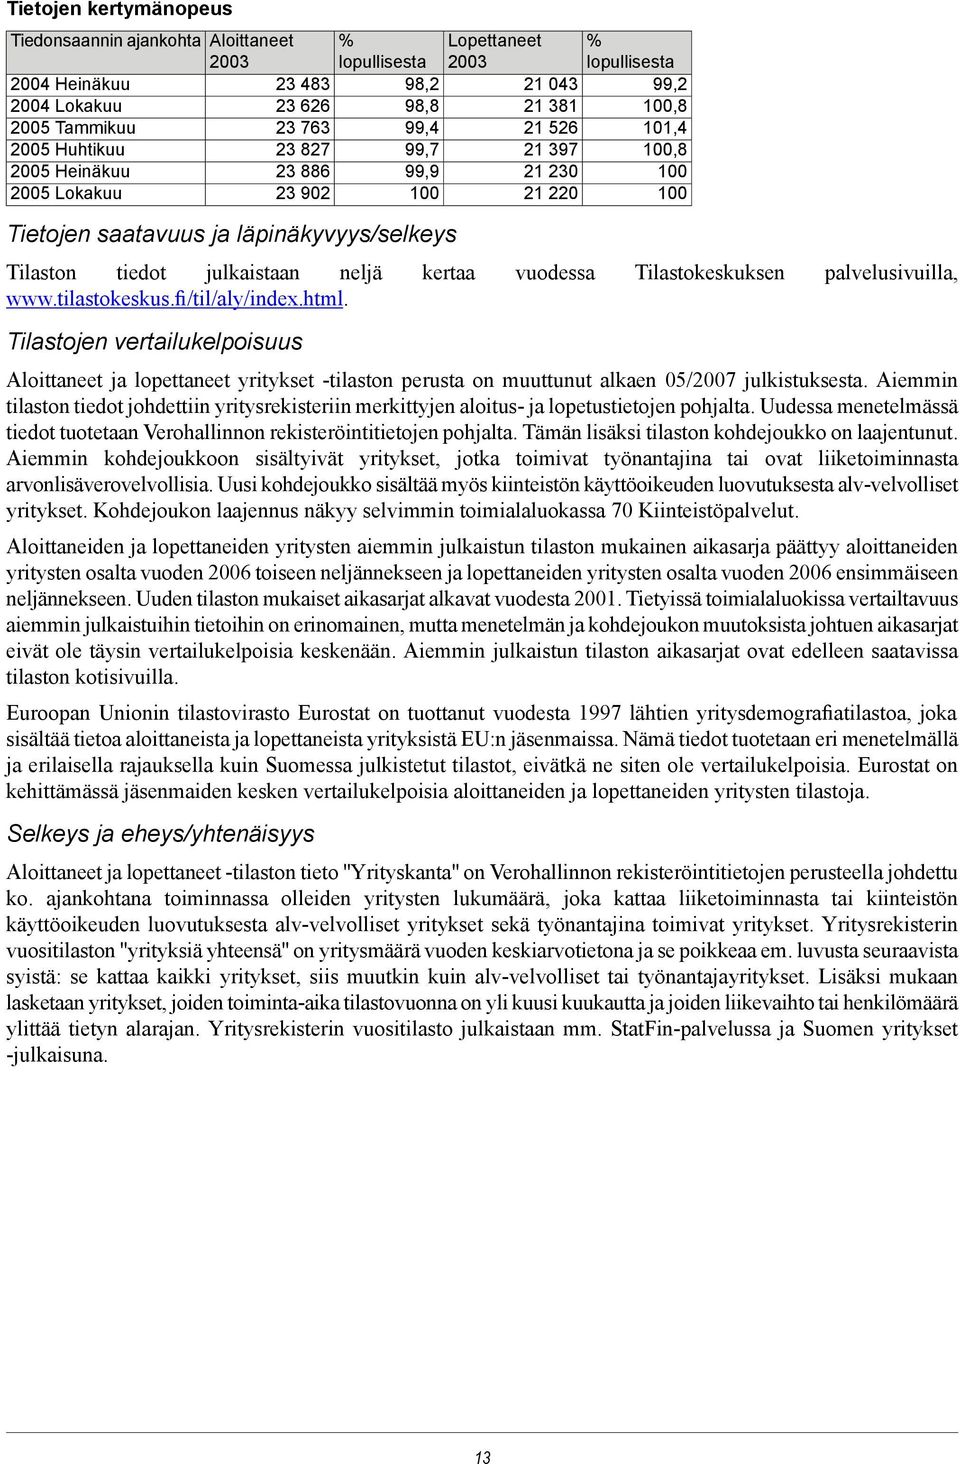 julkaistaan neljä kertaa vuodessa Tilastokeskuksen palvelusivuilla, www.tilastokeskus.fi/til/aly/index.html.